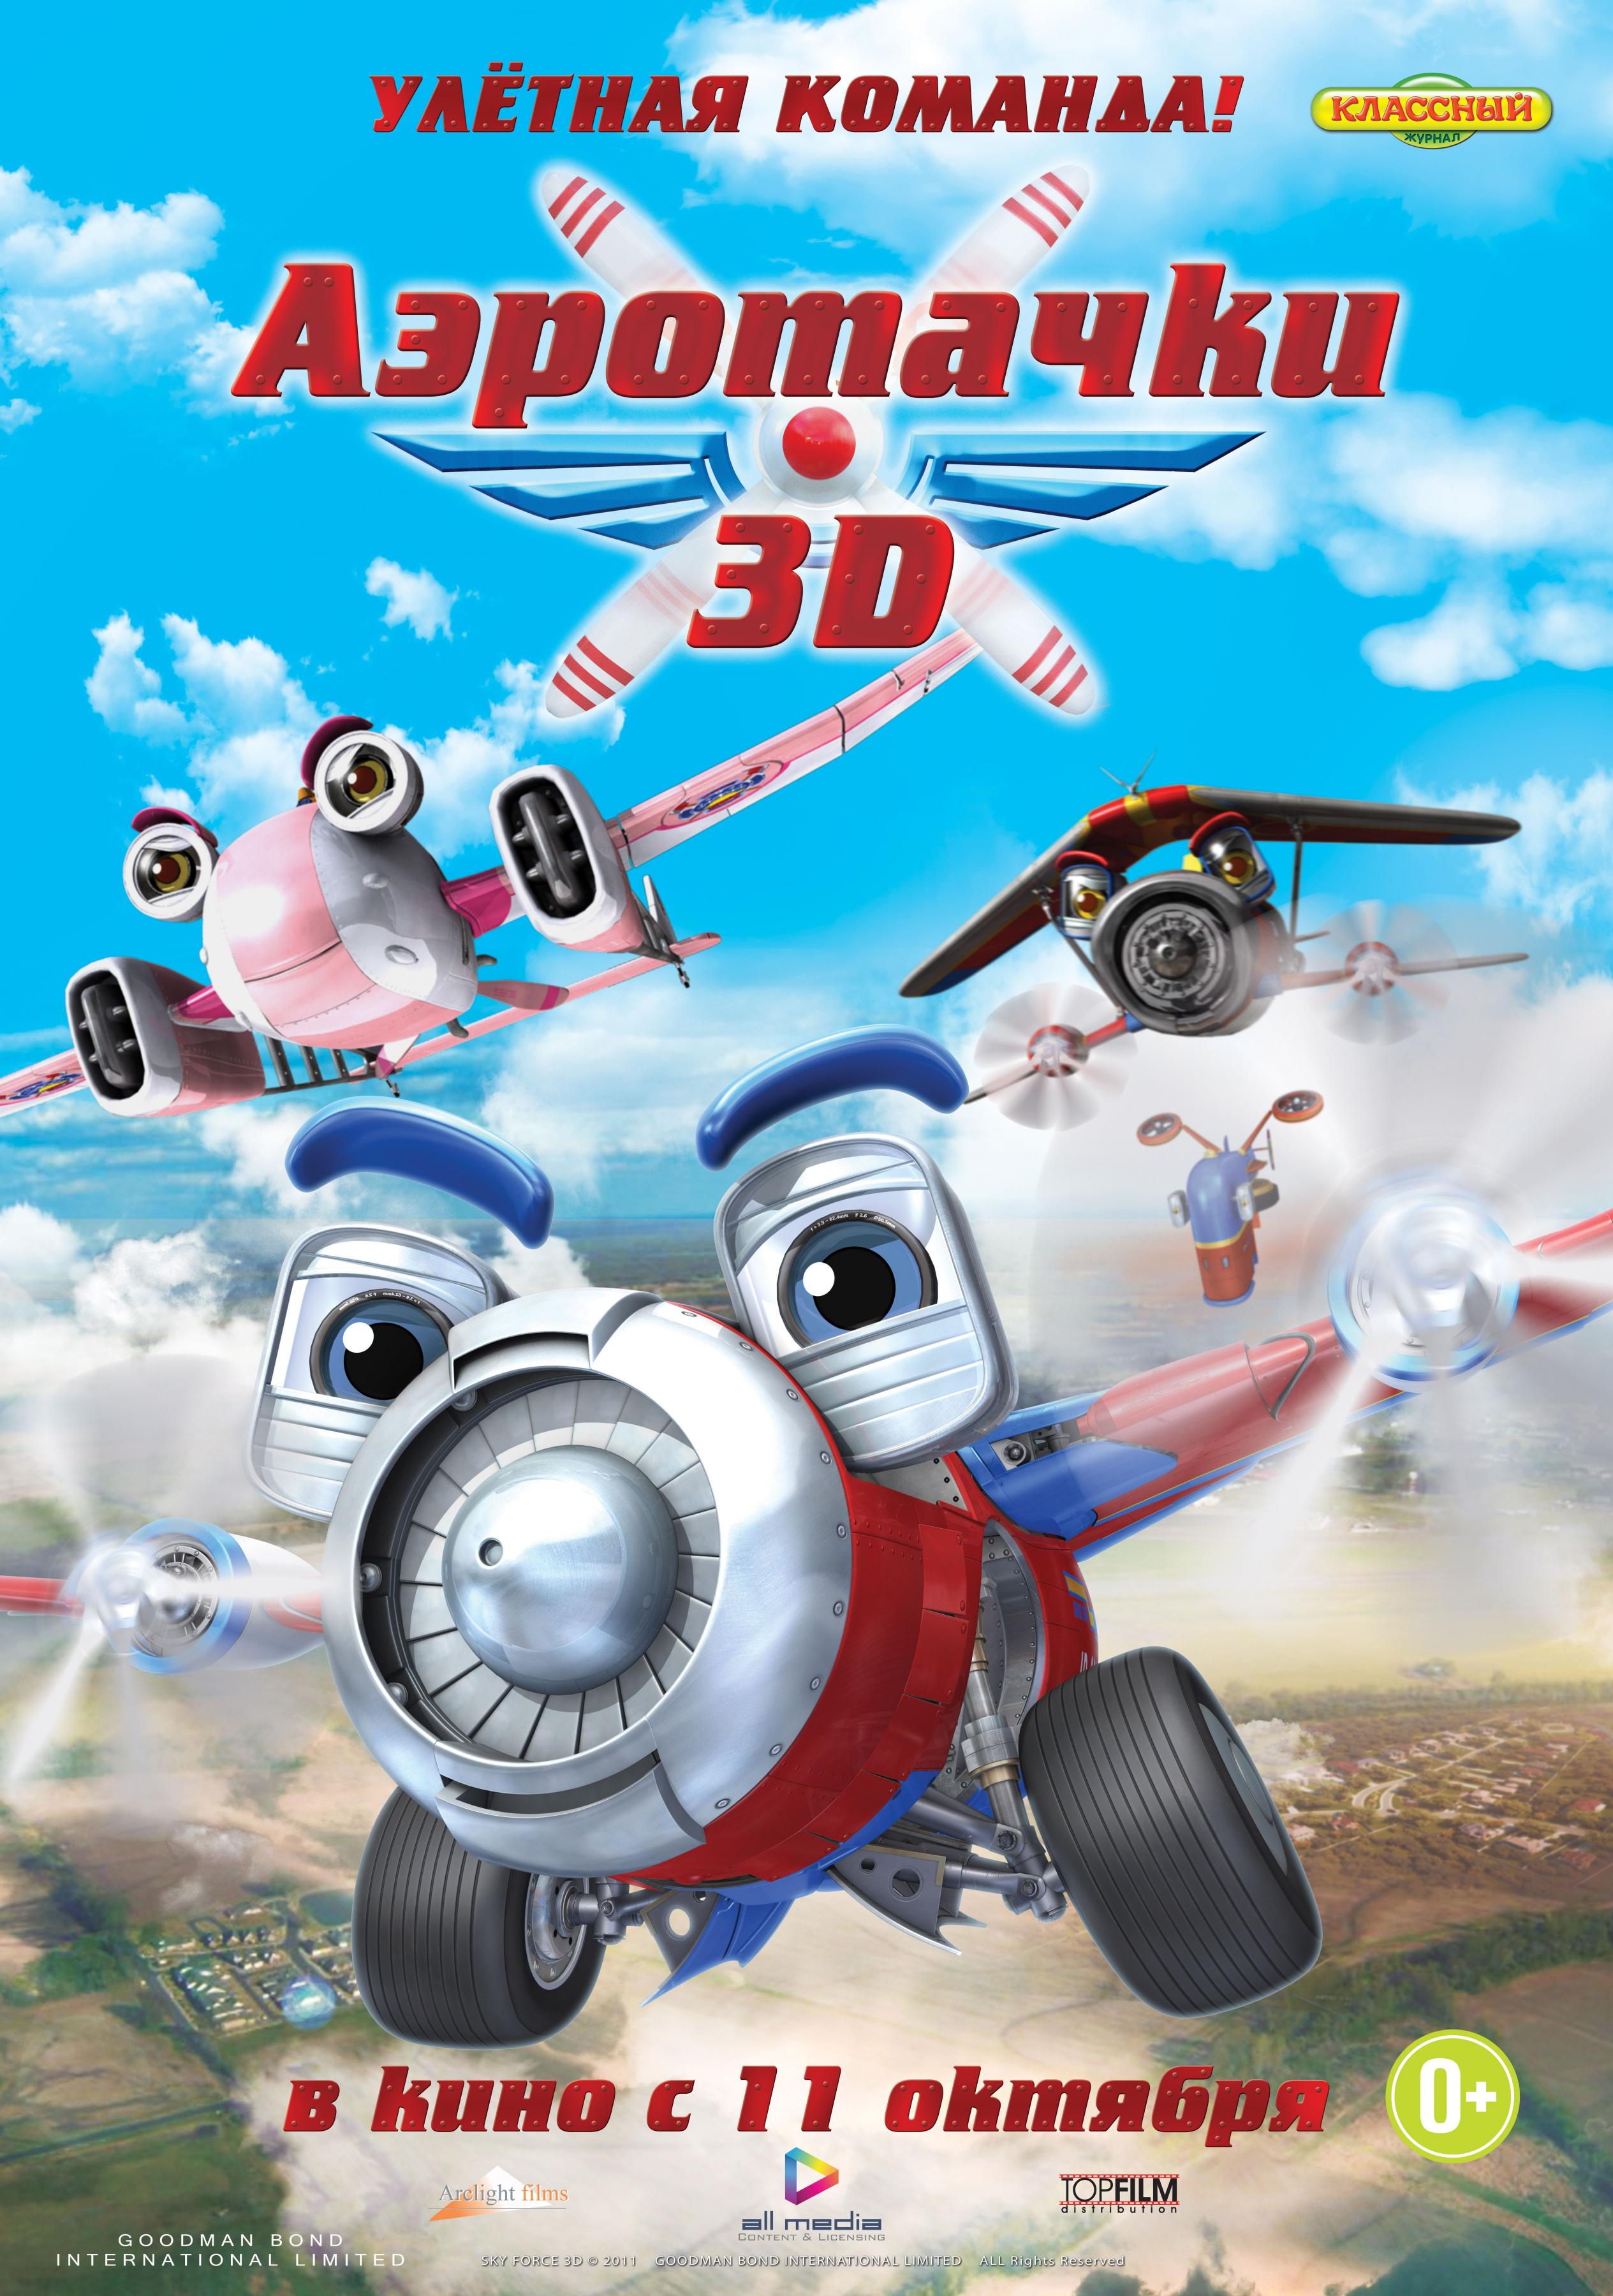 Постер фильма Аэротачки 3D | Sky Force 3D